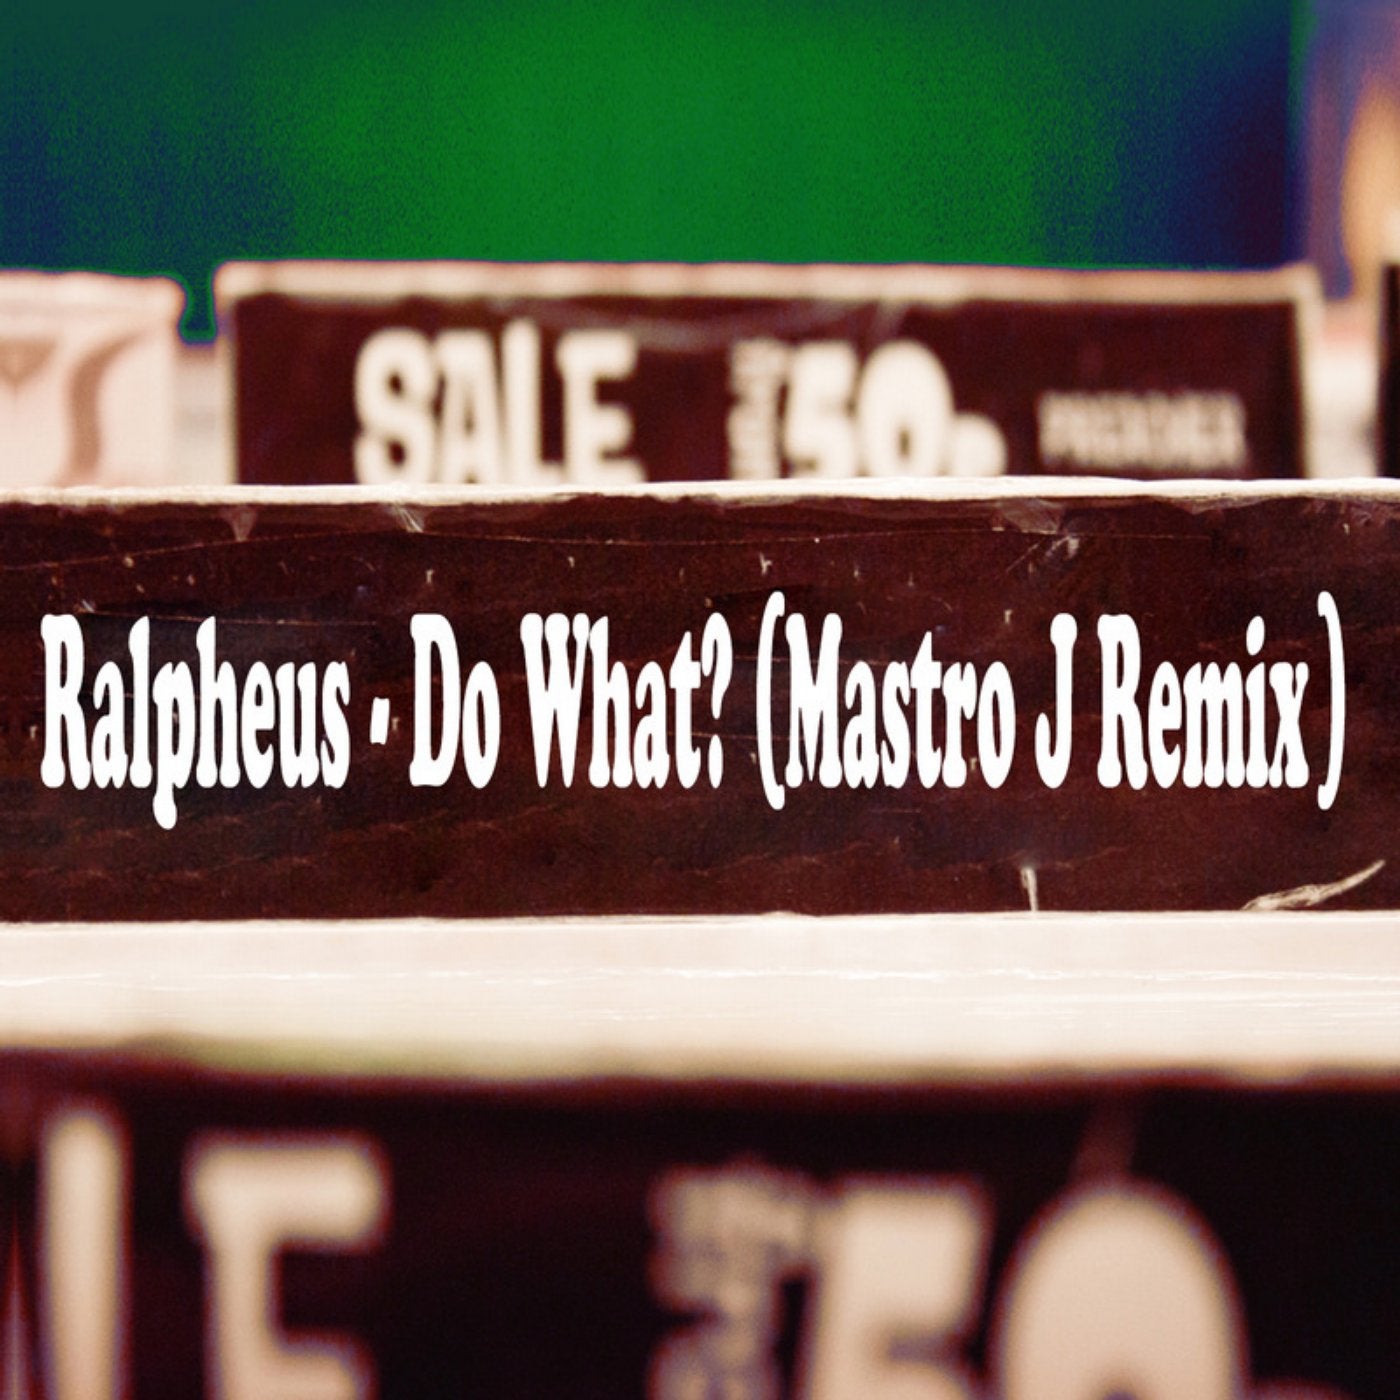 Do What? Mastro J Remix